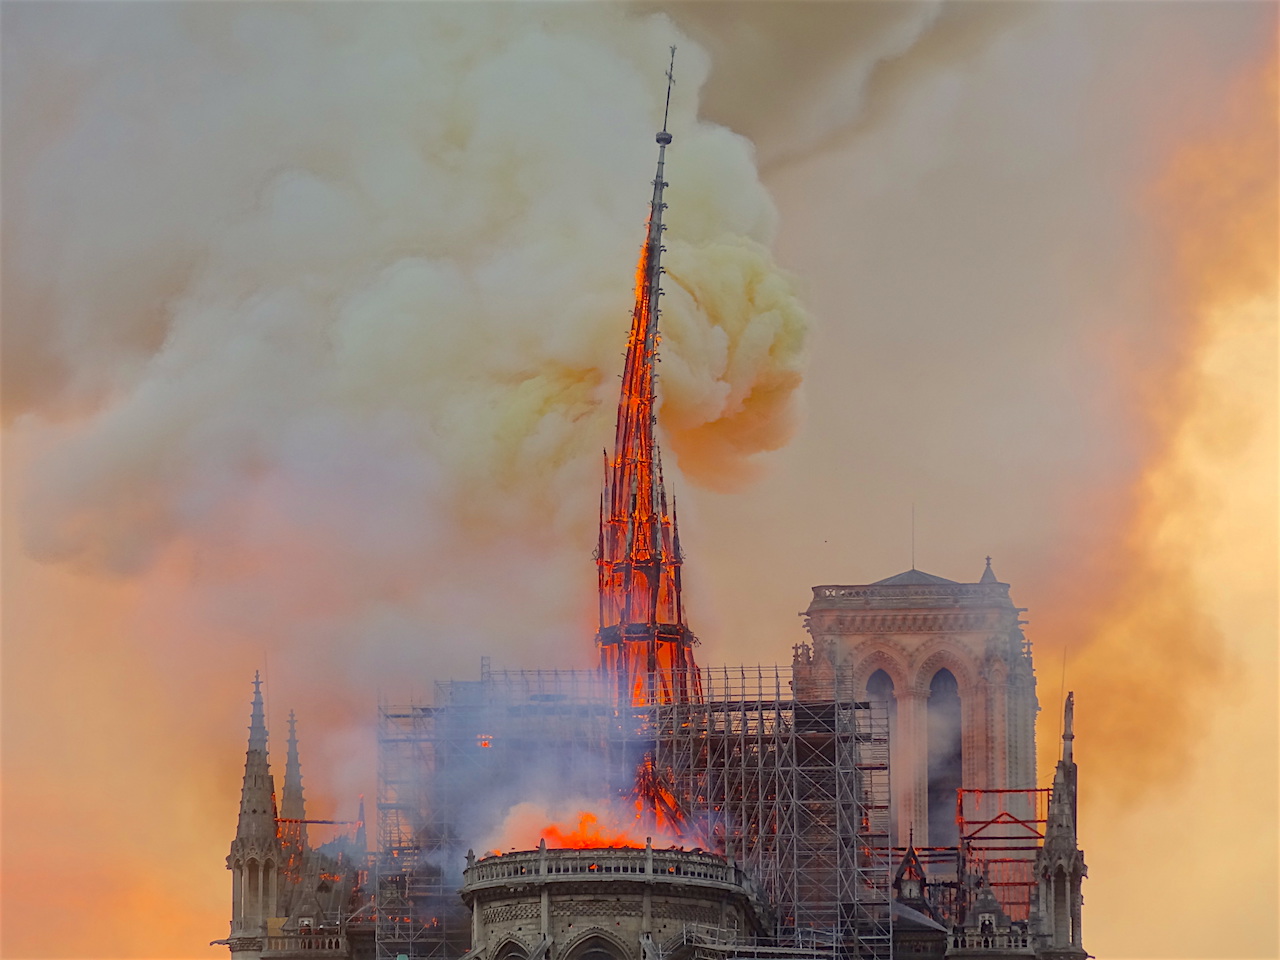 Incendie de Notre-Dame de Paris en 2019